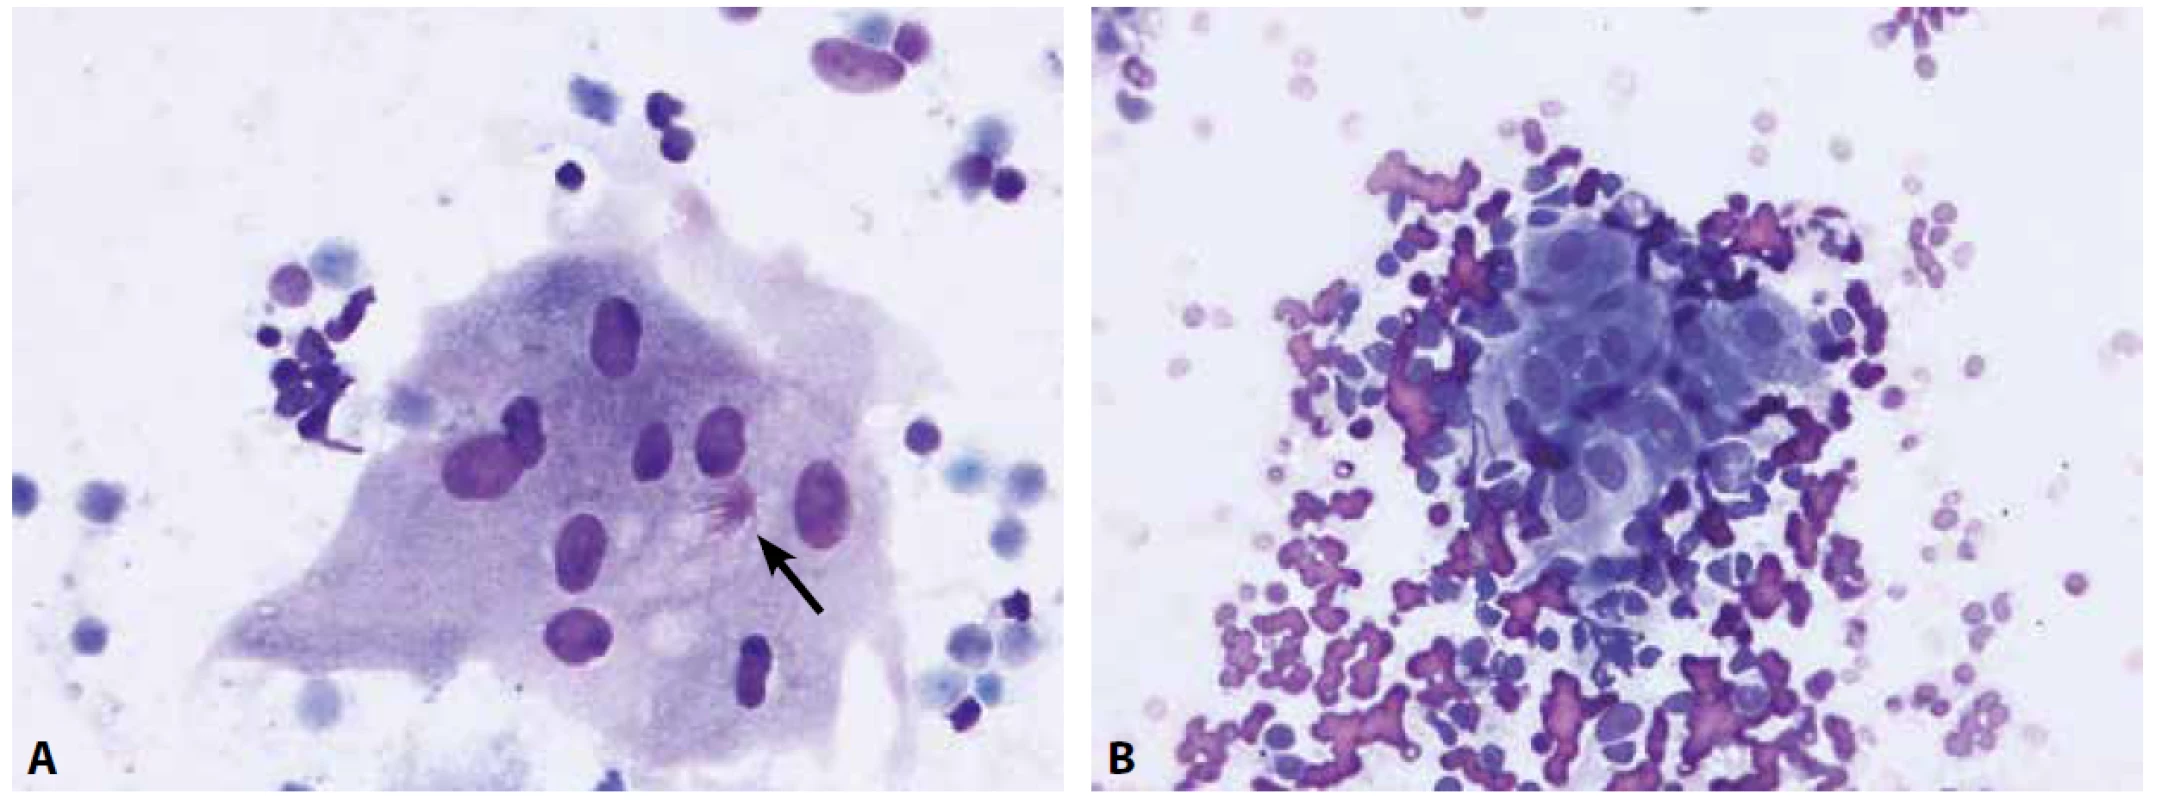 Granulomatózní proces je cytologicky charakterizovaný nálezem epiteloidních buněk a případně buněk obrovských mnohojaderných.<br>
A – obrovská mnohojaderná buňka s asteroidní inkluzí (šipka) u pacienta se sarkoidózou (nátěr z EBUS-FNA nitrohrudní lymfatické uzliny, Diff-Quik®, 400x)<br>
B – epiteloidní buňky, vyskytující se ve shlucích mezi buňkami uzliny, mají protáhlý tvar jader, jemný chromatin a bohatou, nezřetelně ohraničenou cytoplazmu
(nátěr z EBUS-FNA lymfatické uzliny u pacienta se sarkoidózou; Diff-Quik®, 400x)